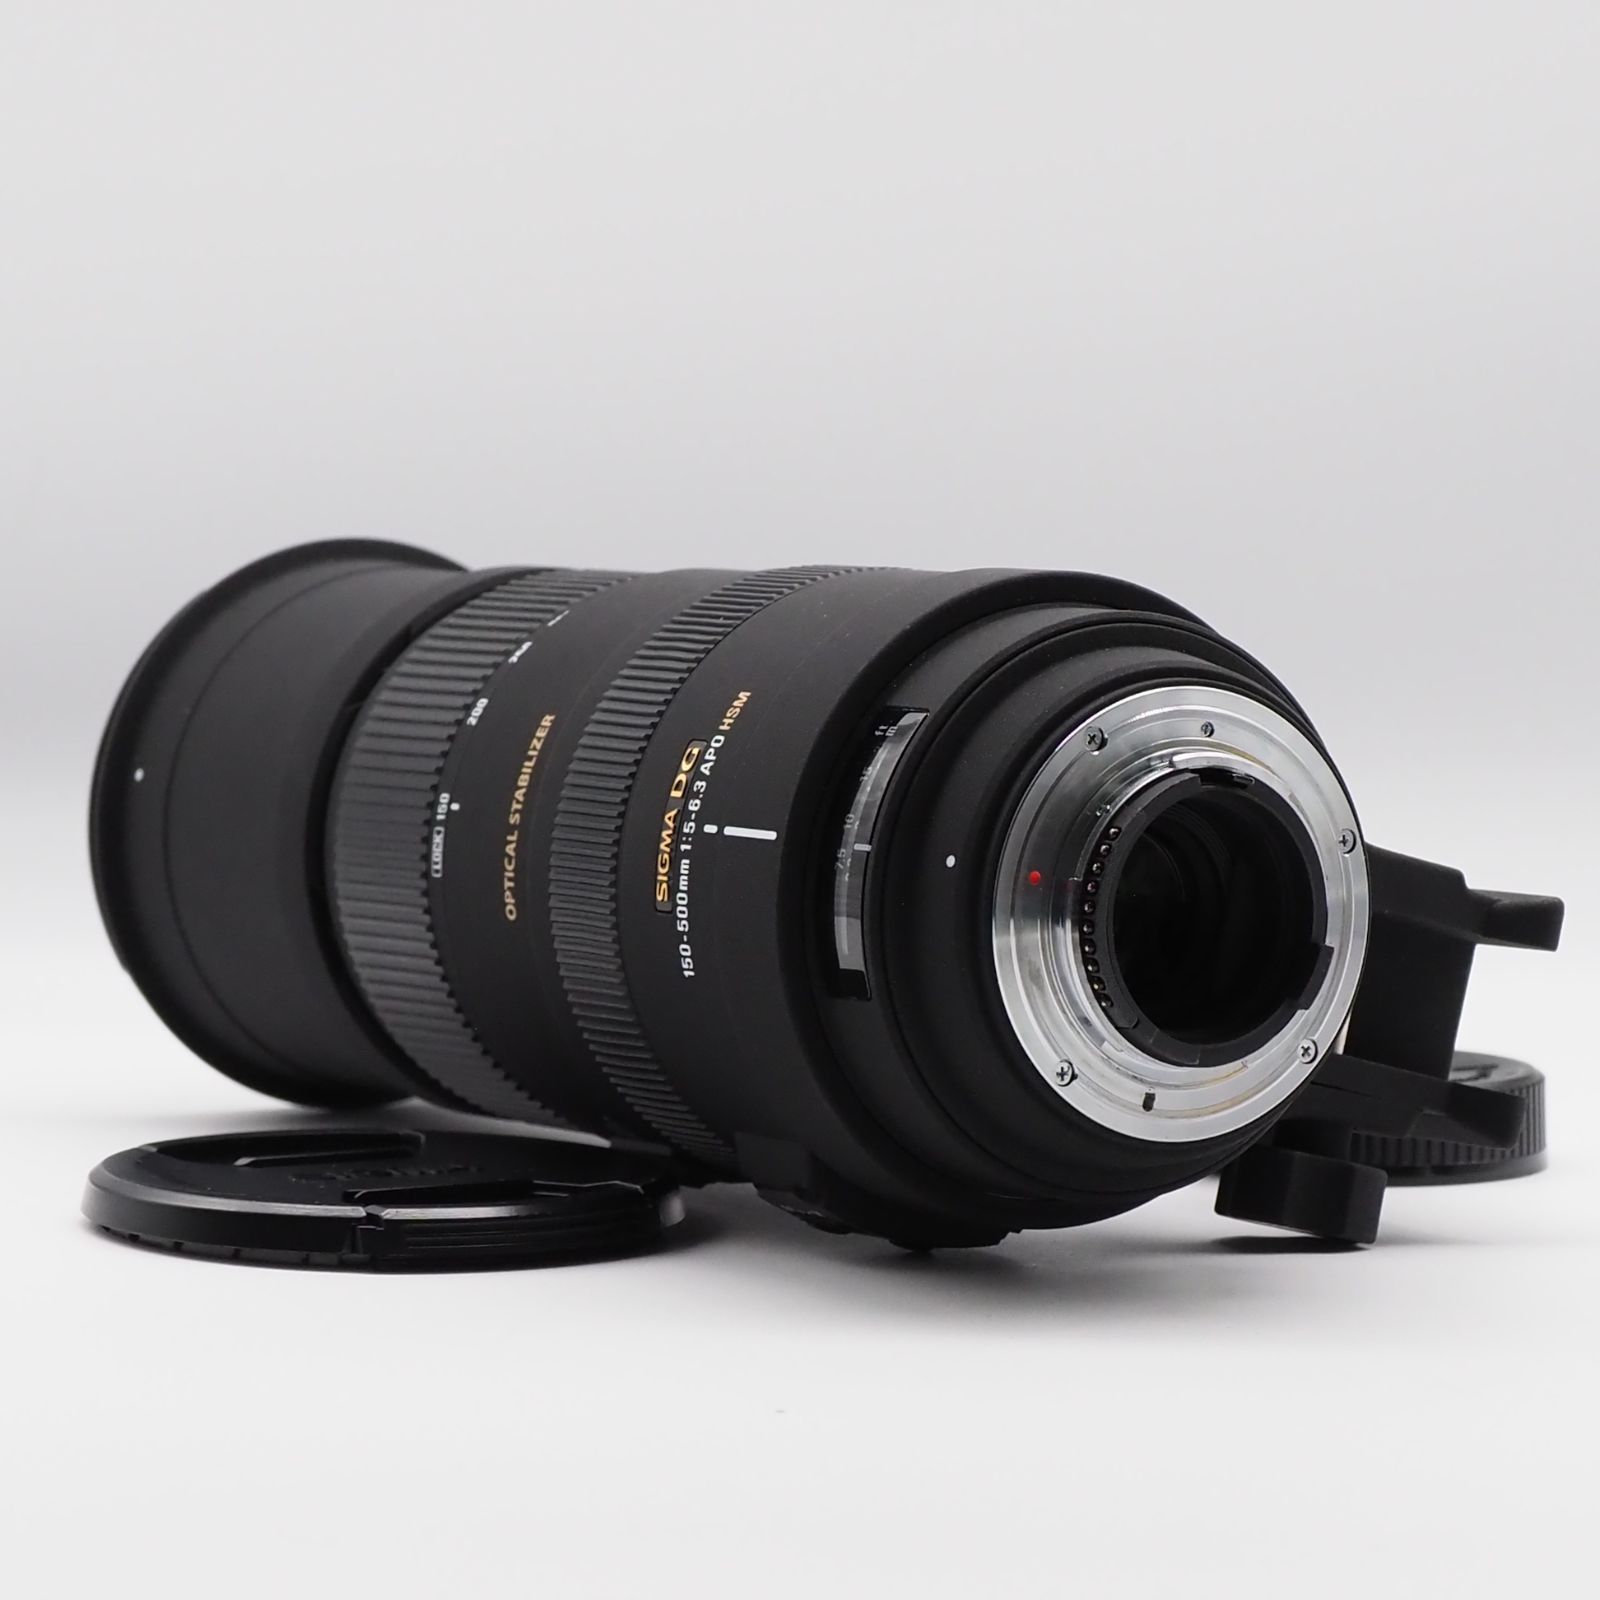 SIGMA 超望遠ズームレンズ APO 150-500mm F5-6.3 DG OS HSM ニコン用 フルサイズ対応 737559 スズキカメラ  メルカリ